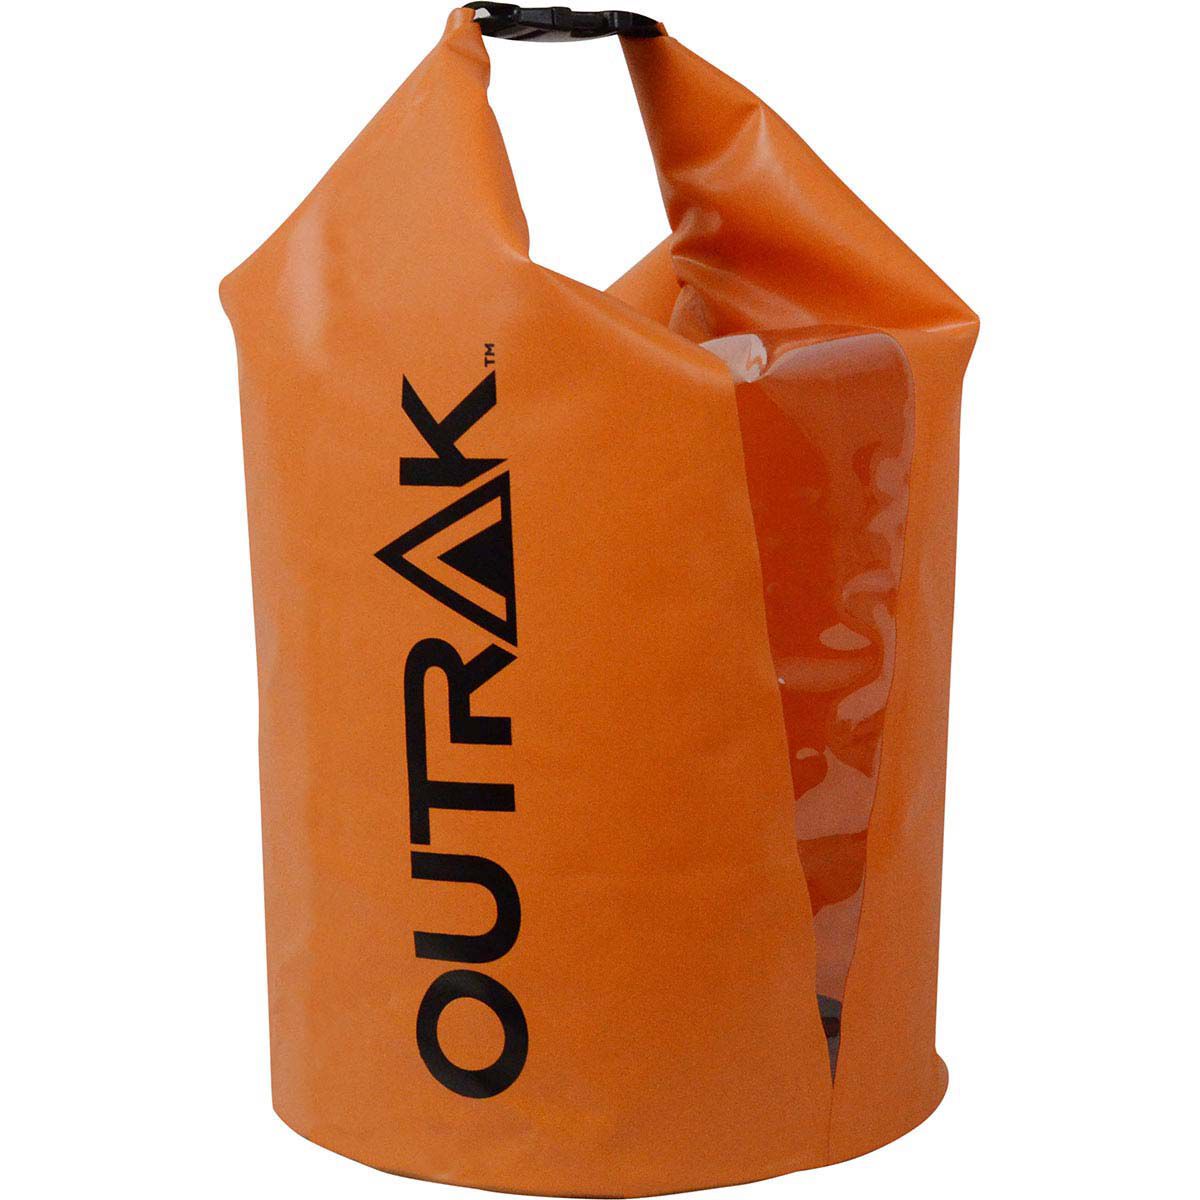 waterproof bags australia